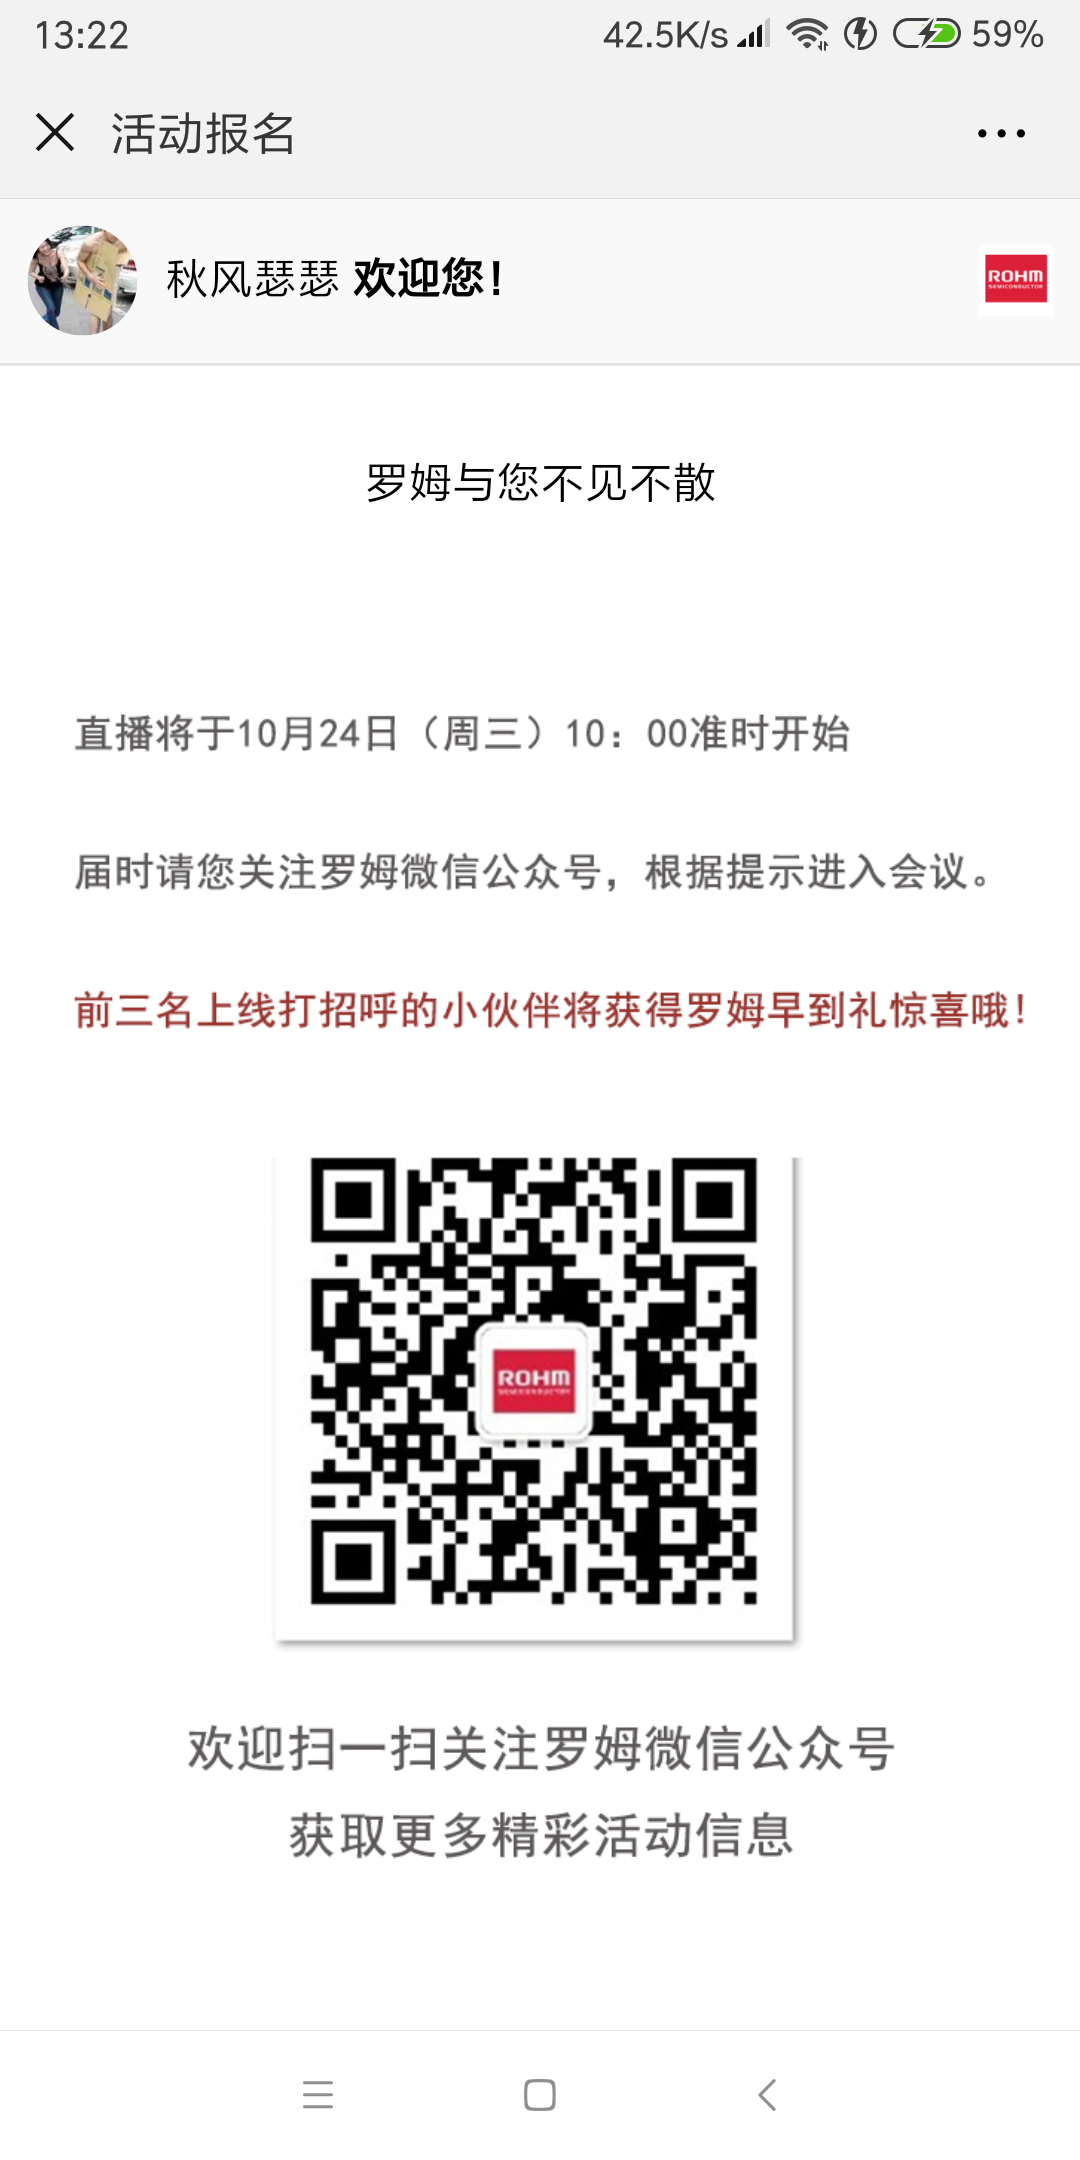 Screenshot_2018-09-28-13-22-04-809_com.tencent.mm.png